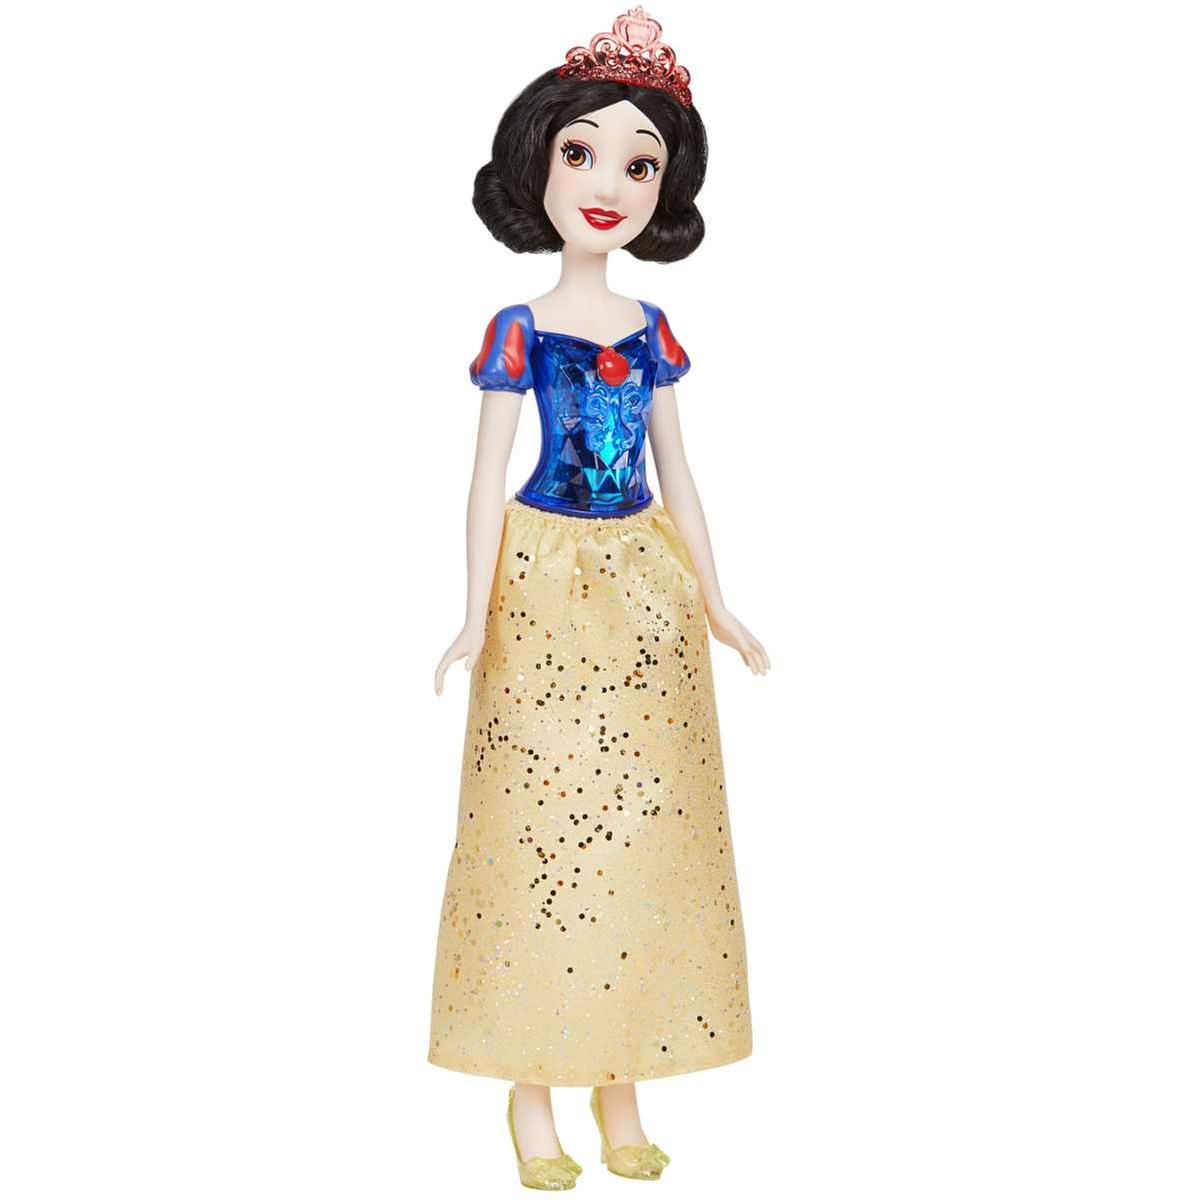 Princesas Disney - Branca de Neve | BONECAS PRINCESAS DISNEY & ACESSÓRIOS |  Loja de brinquedos e videojogos Online Toysrus